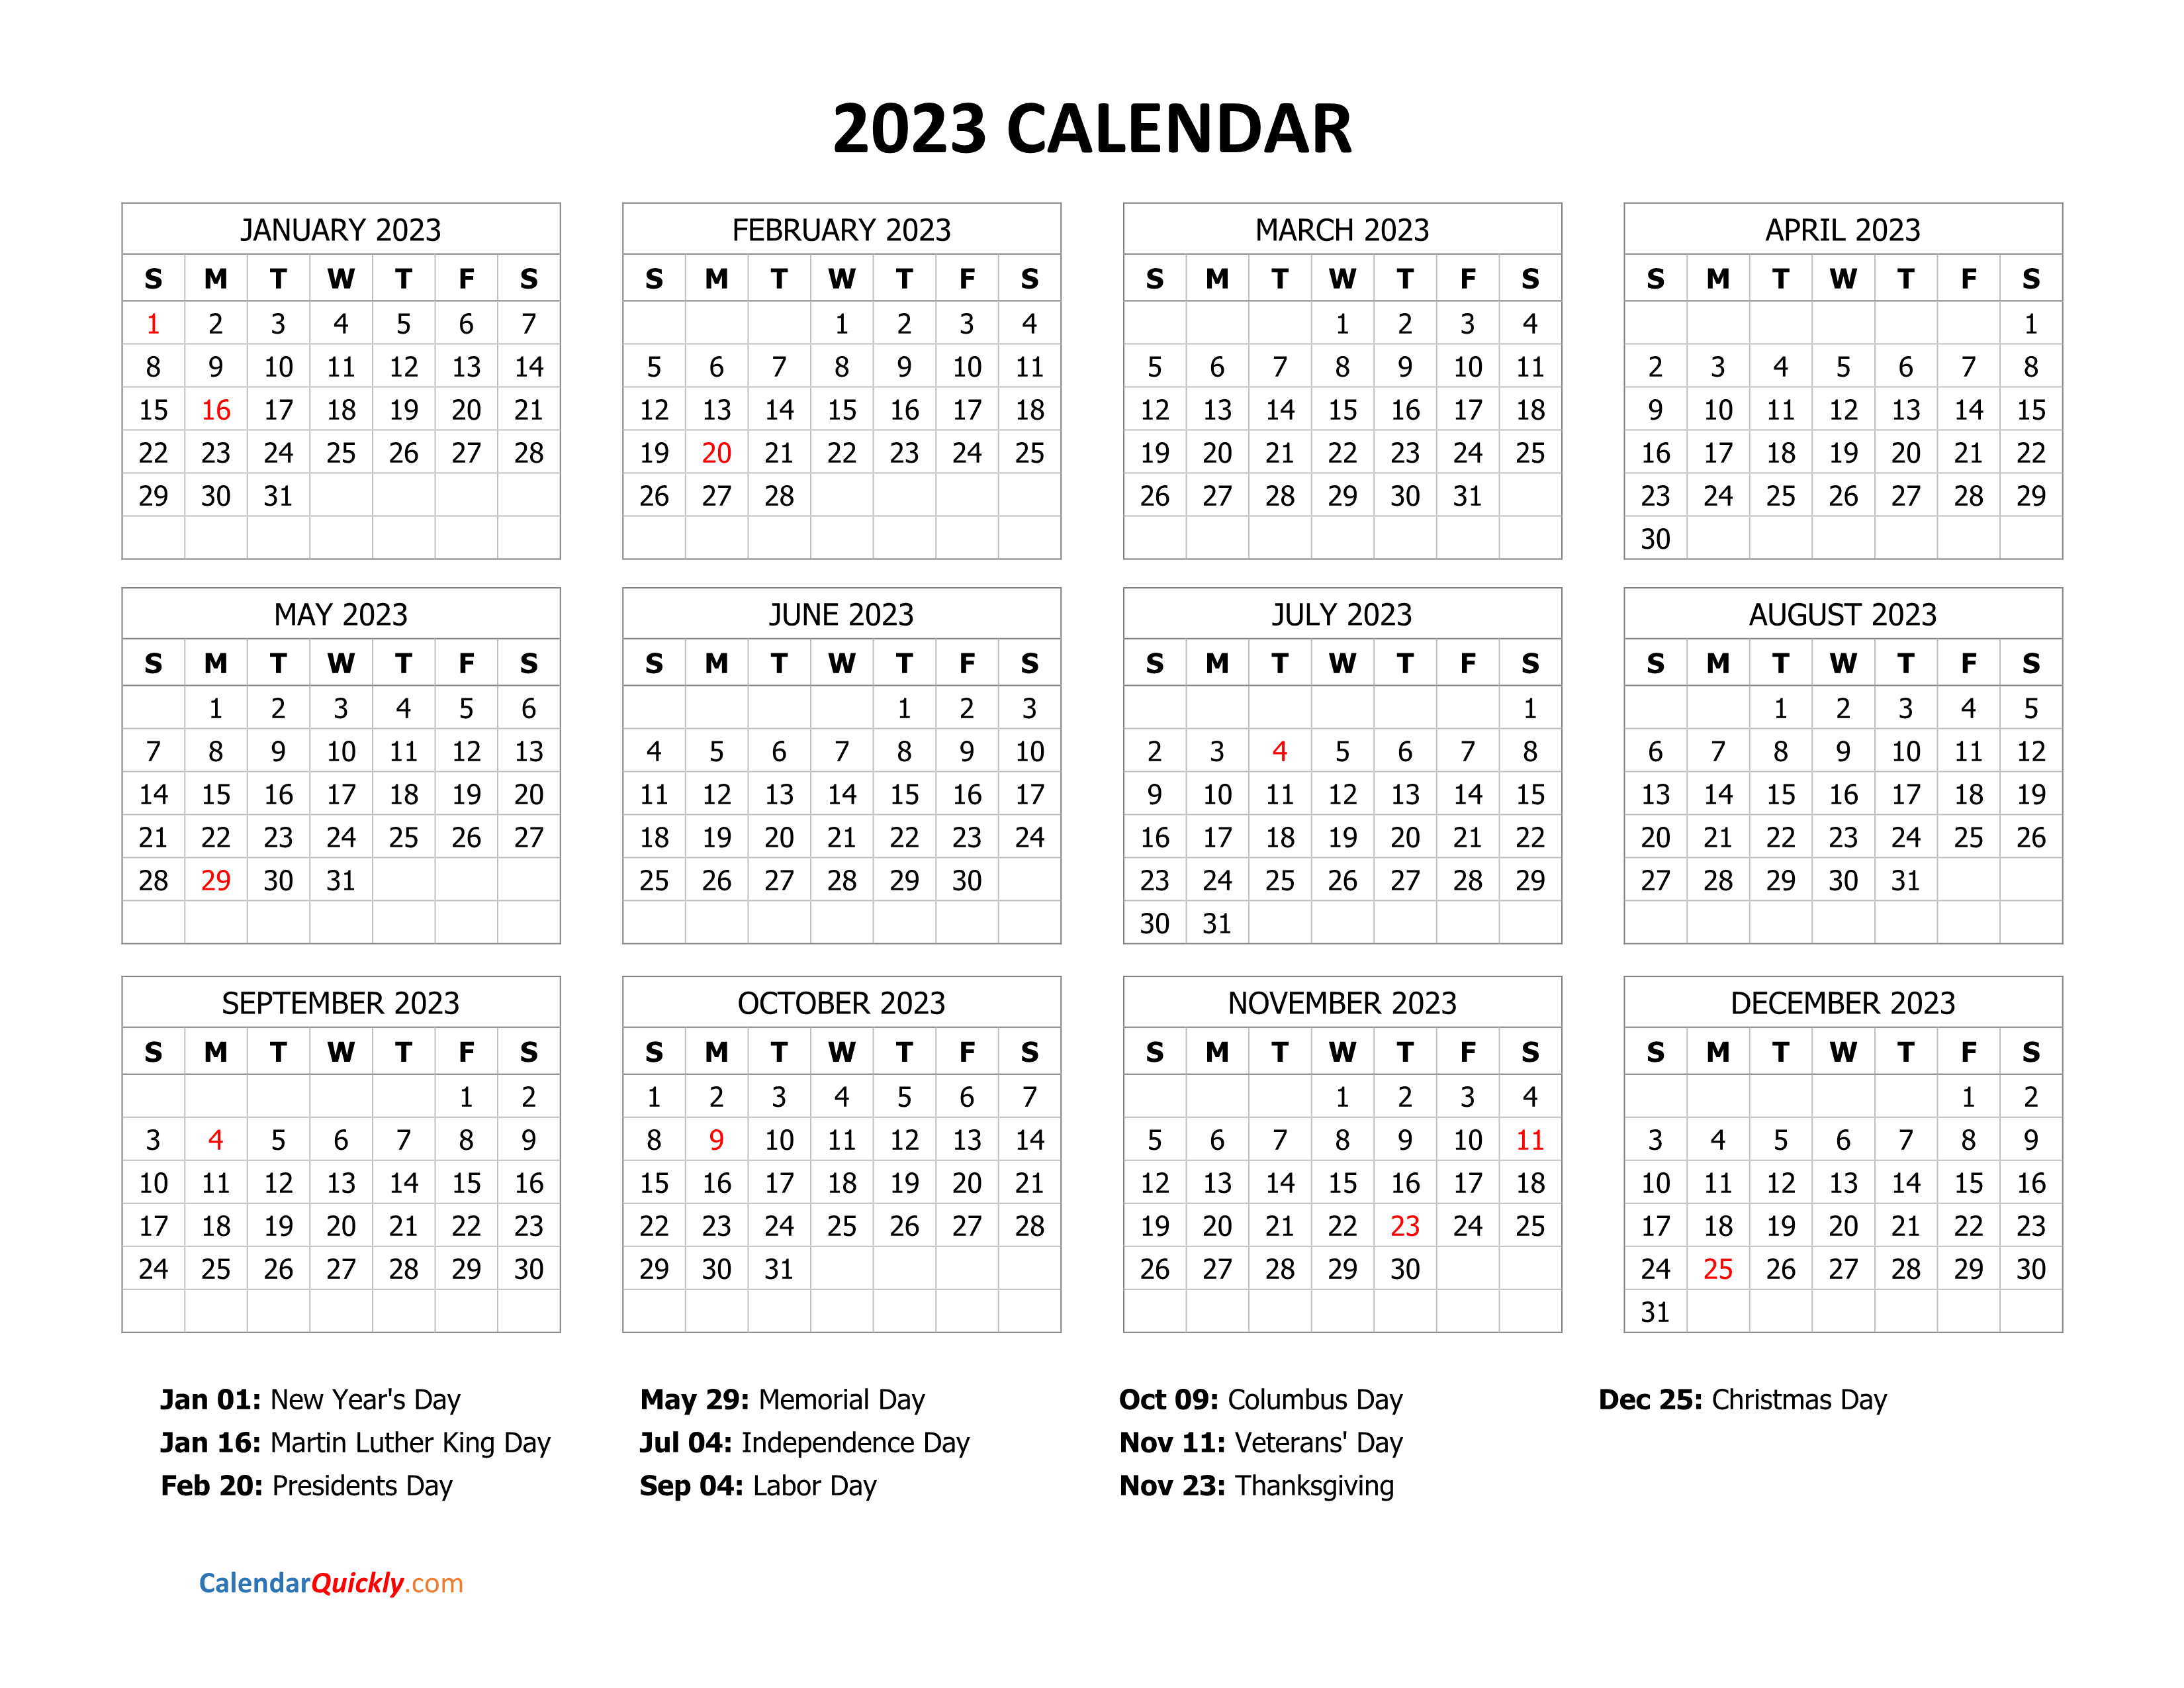 2023 Calendar with Holidays | Calendar Quickly